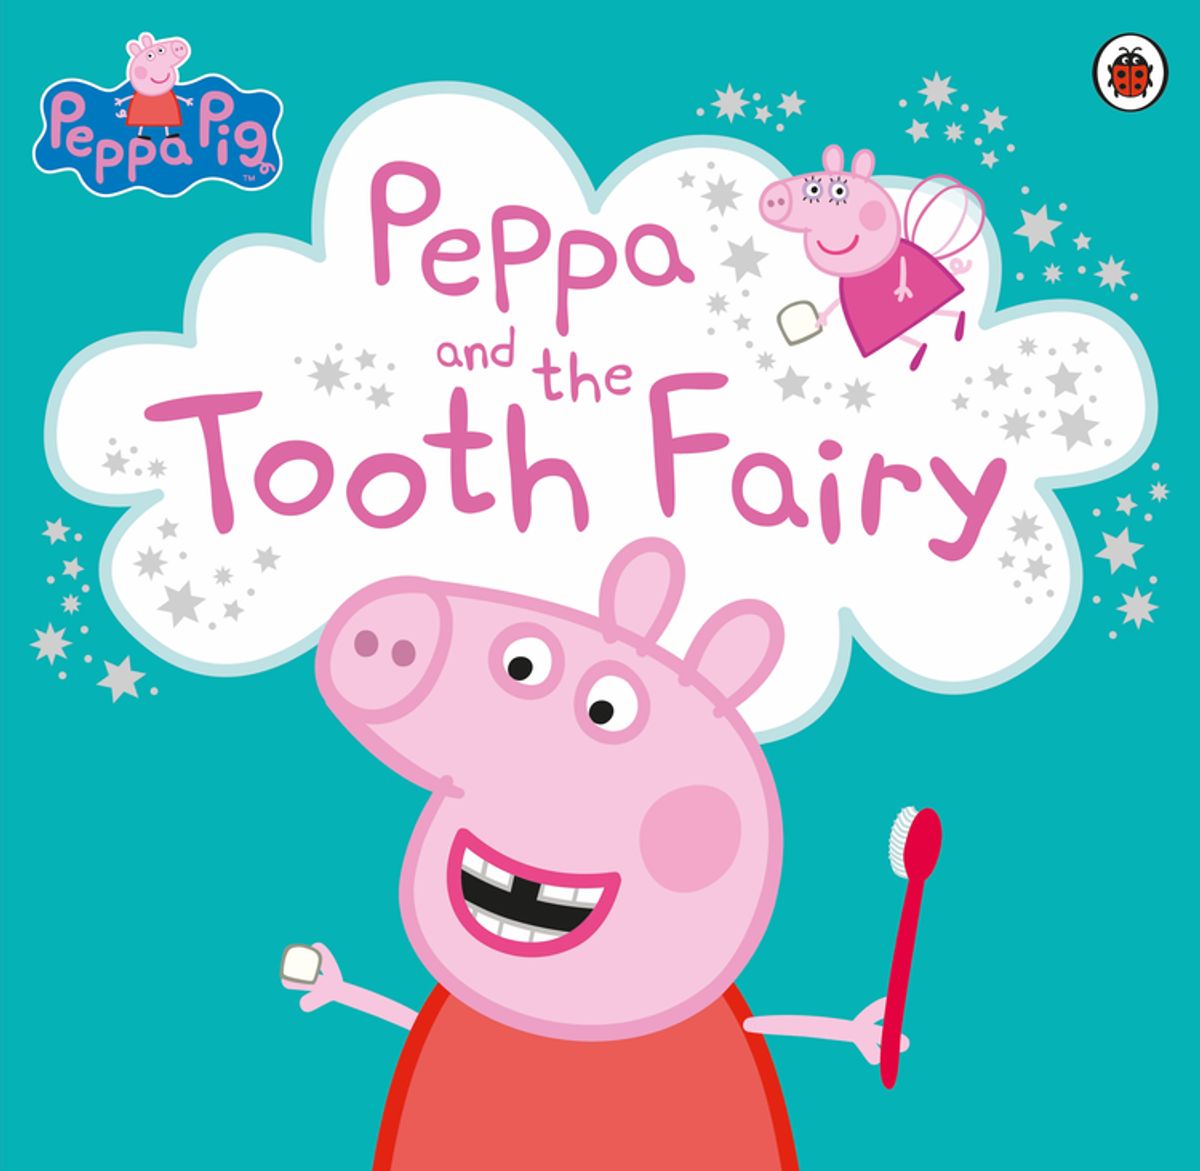 Peppa Pig Malvorlagen: Wir haben attraktive Malvorlagen erstellt, um die Entwicklung von Kindern zu unterstützen!